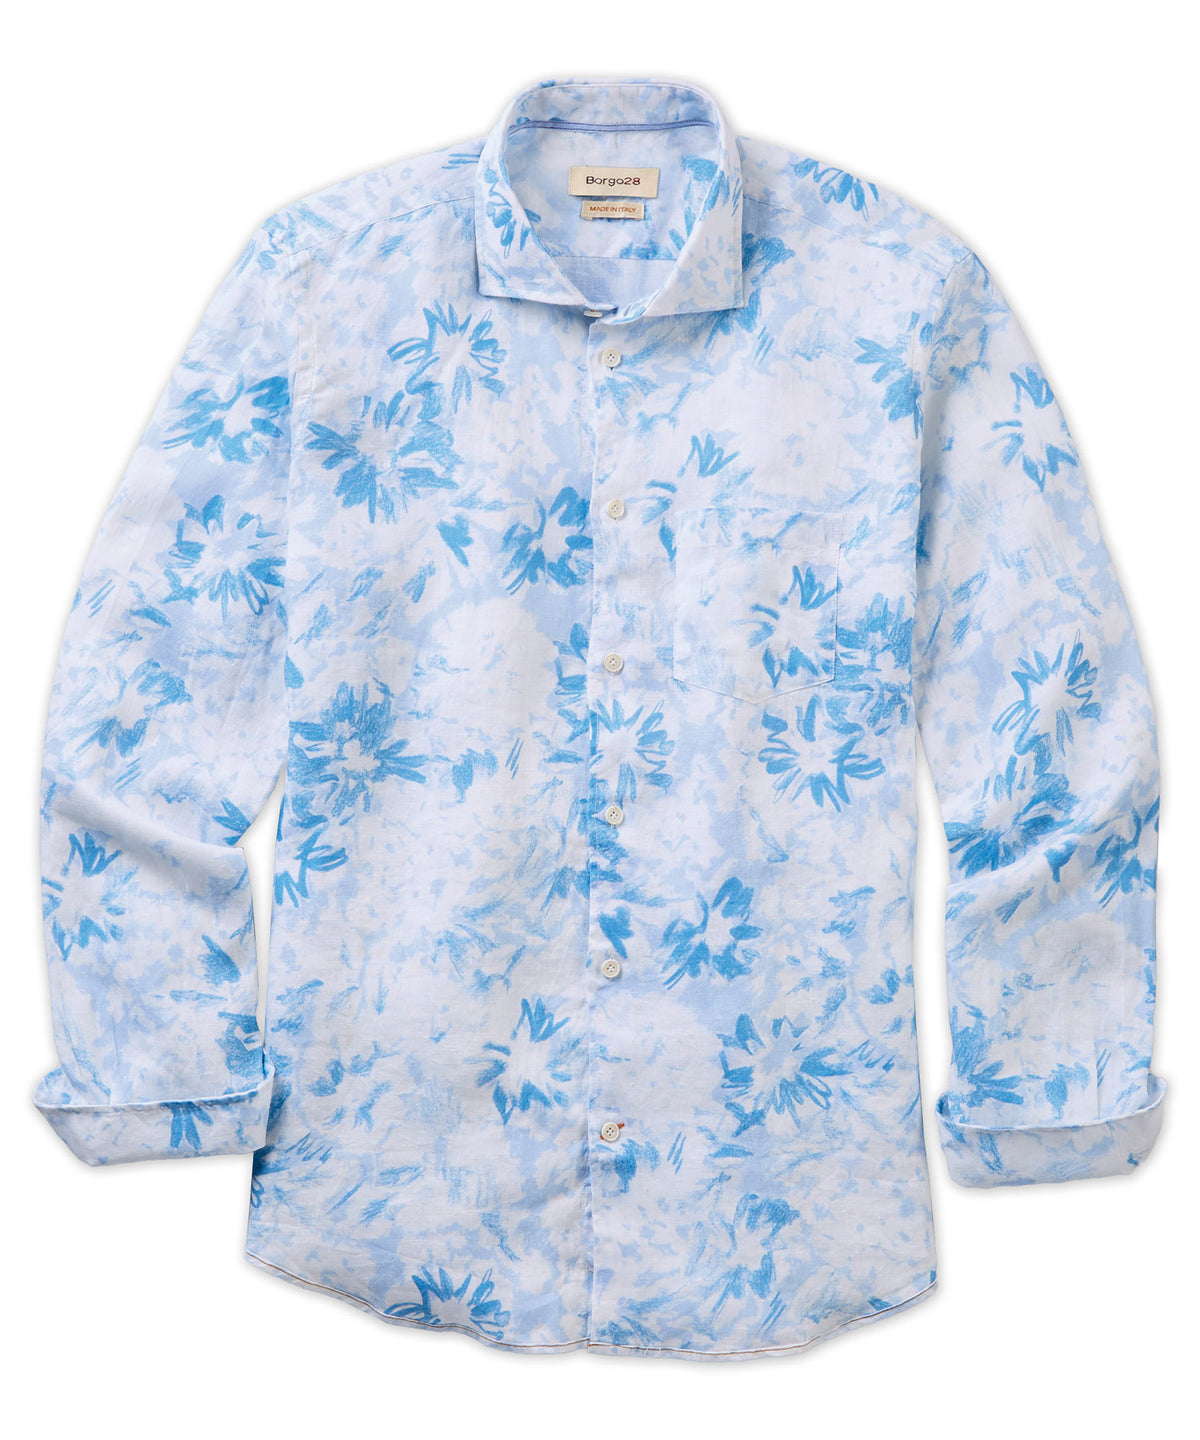 Merlino Flower Long Sleeve Linen Sport Shirt - Borgo28